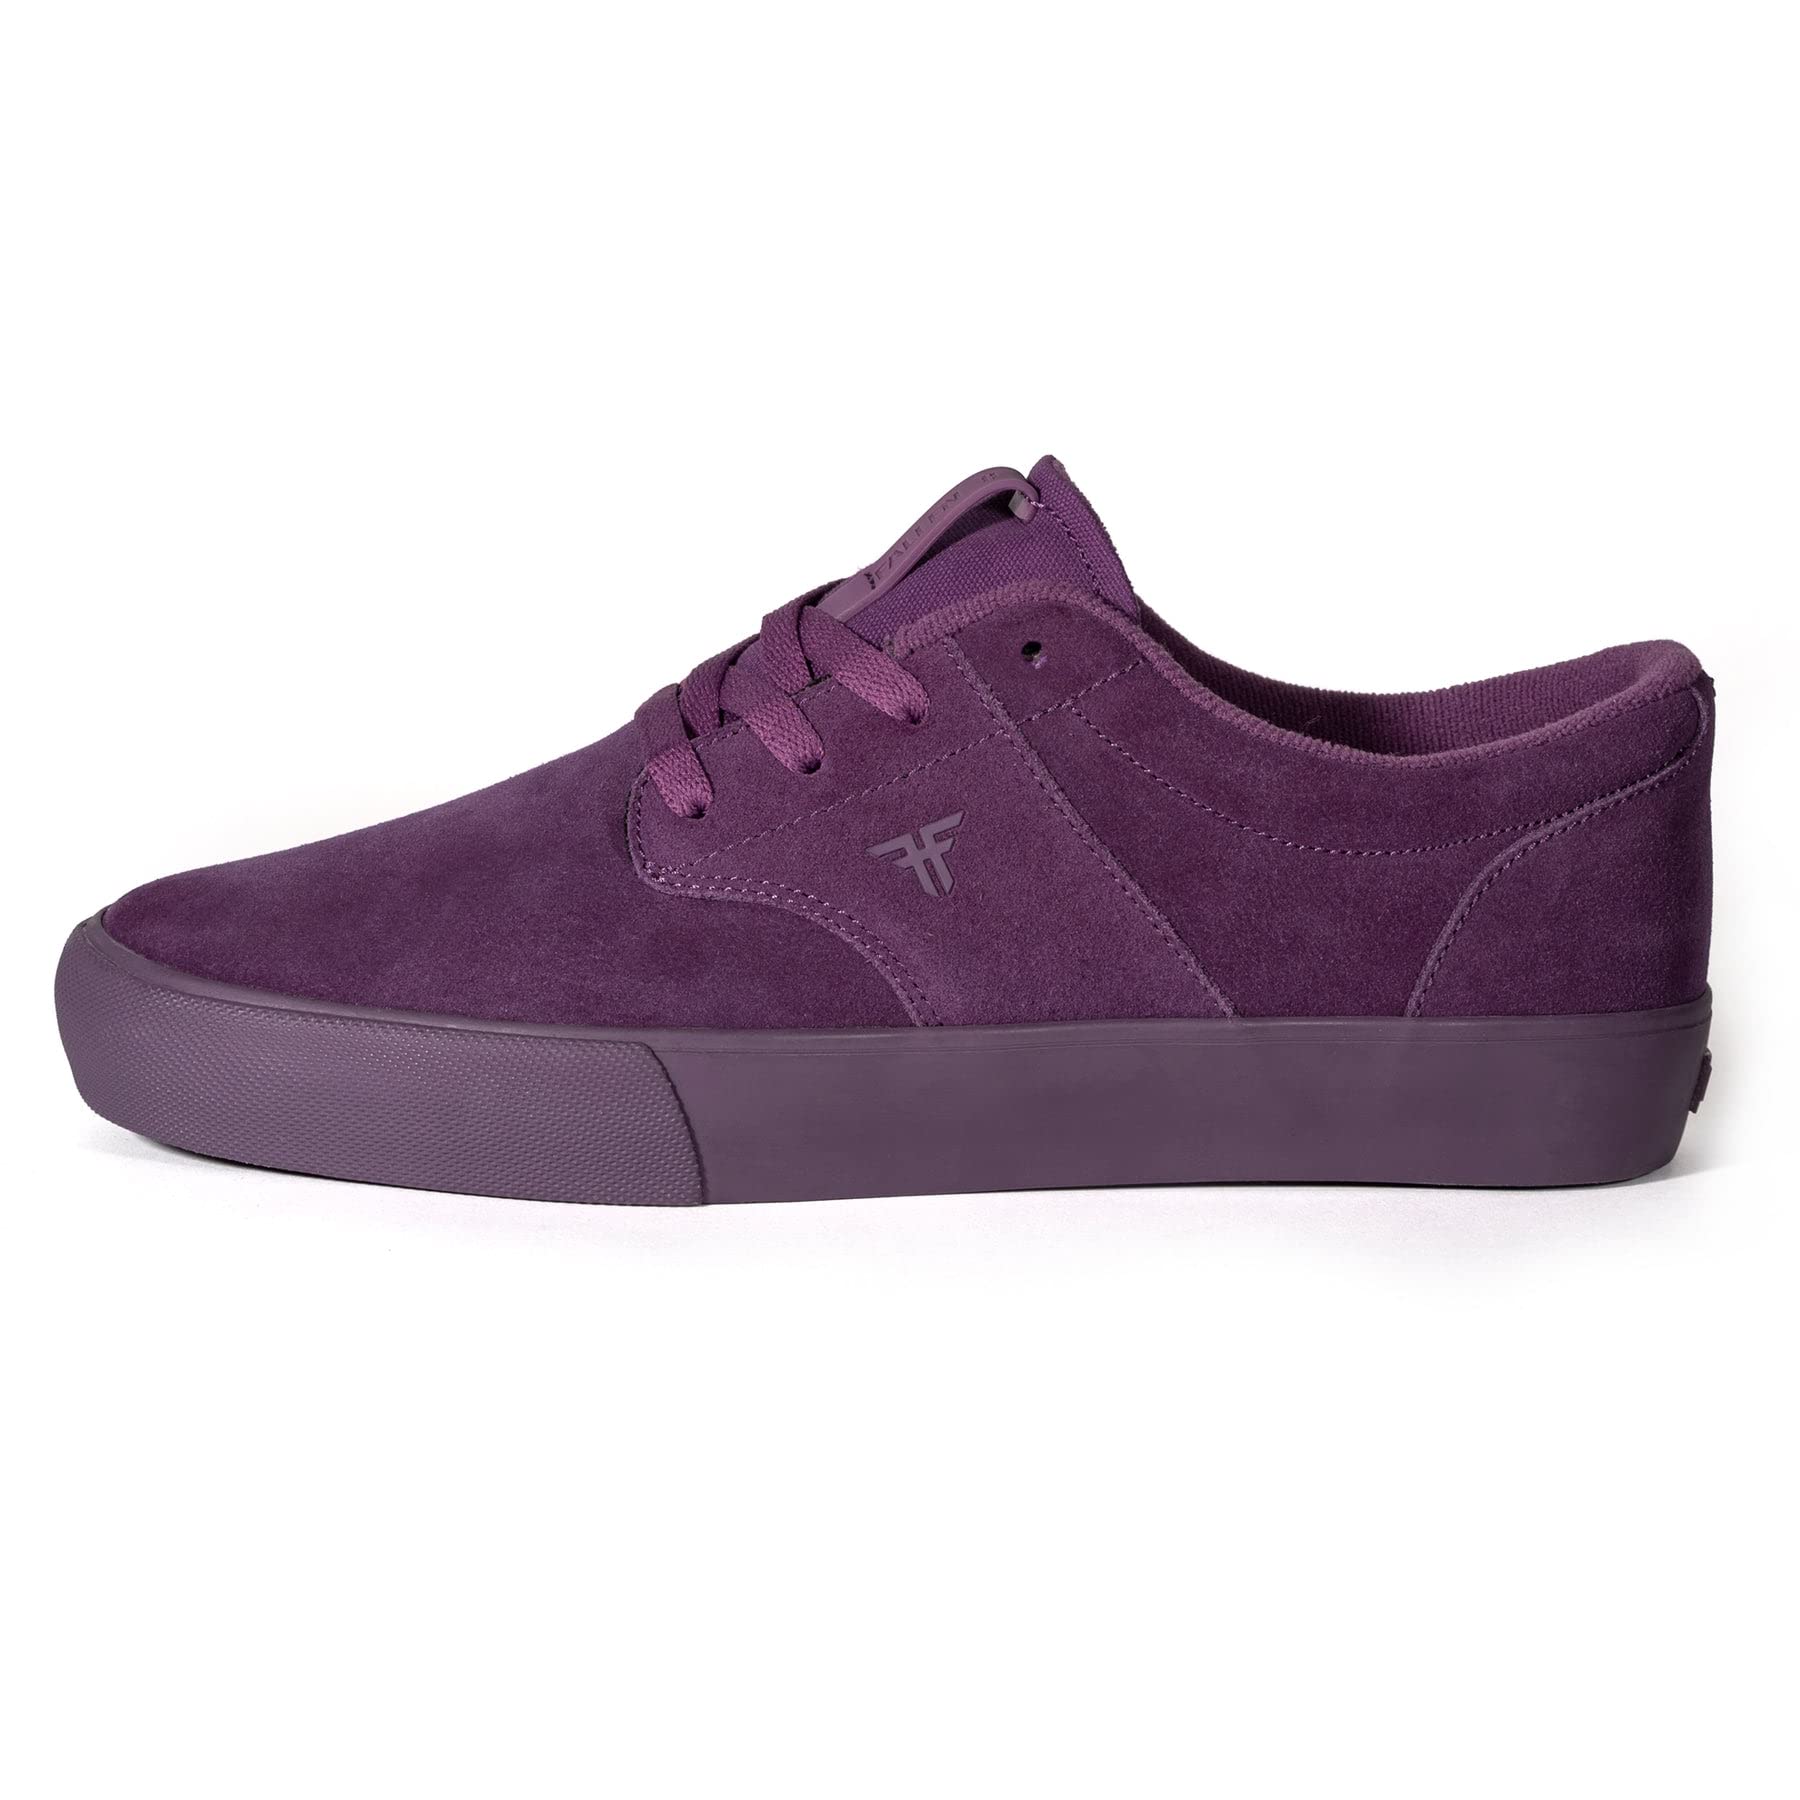 Fallen Mens Phoenix PurplePurple - Vulc Skate Shoes